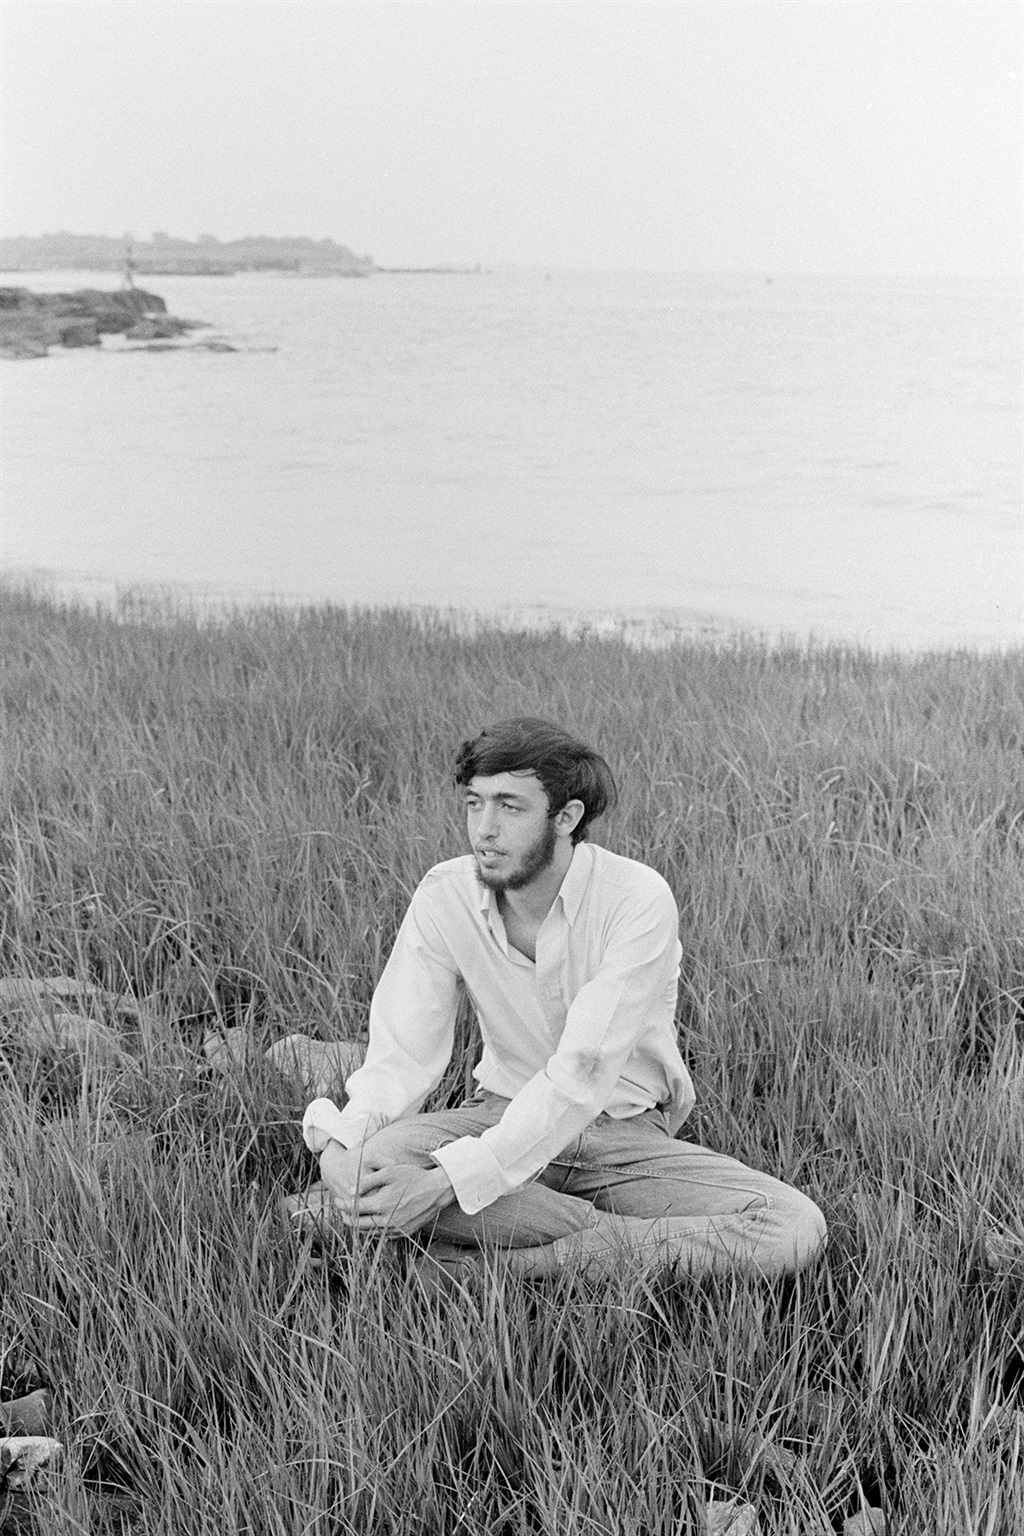 Roger aged eighteen, 1968. (Photo: Roger Ballen/ Supplied)